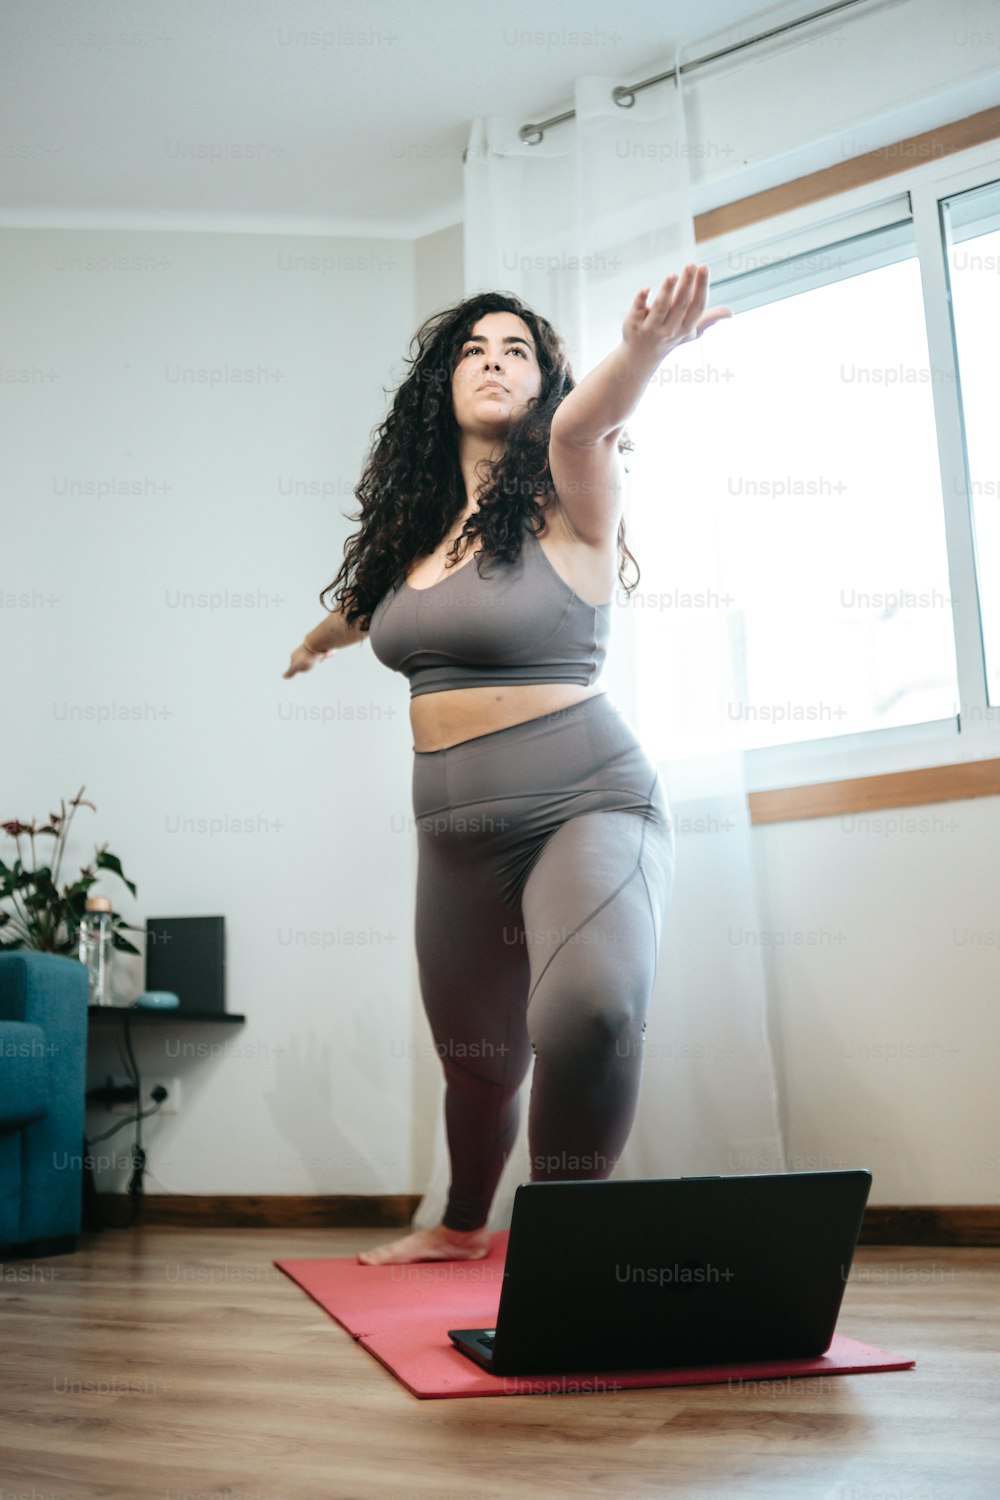 Una mujer parada en una esterilla de yoga frente a una computadora portátil